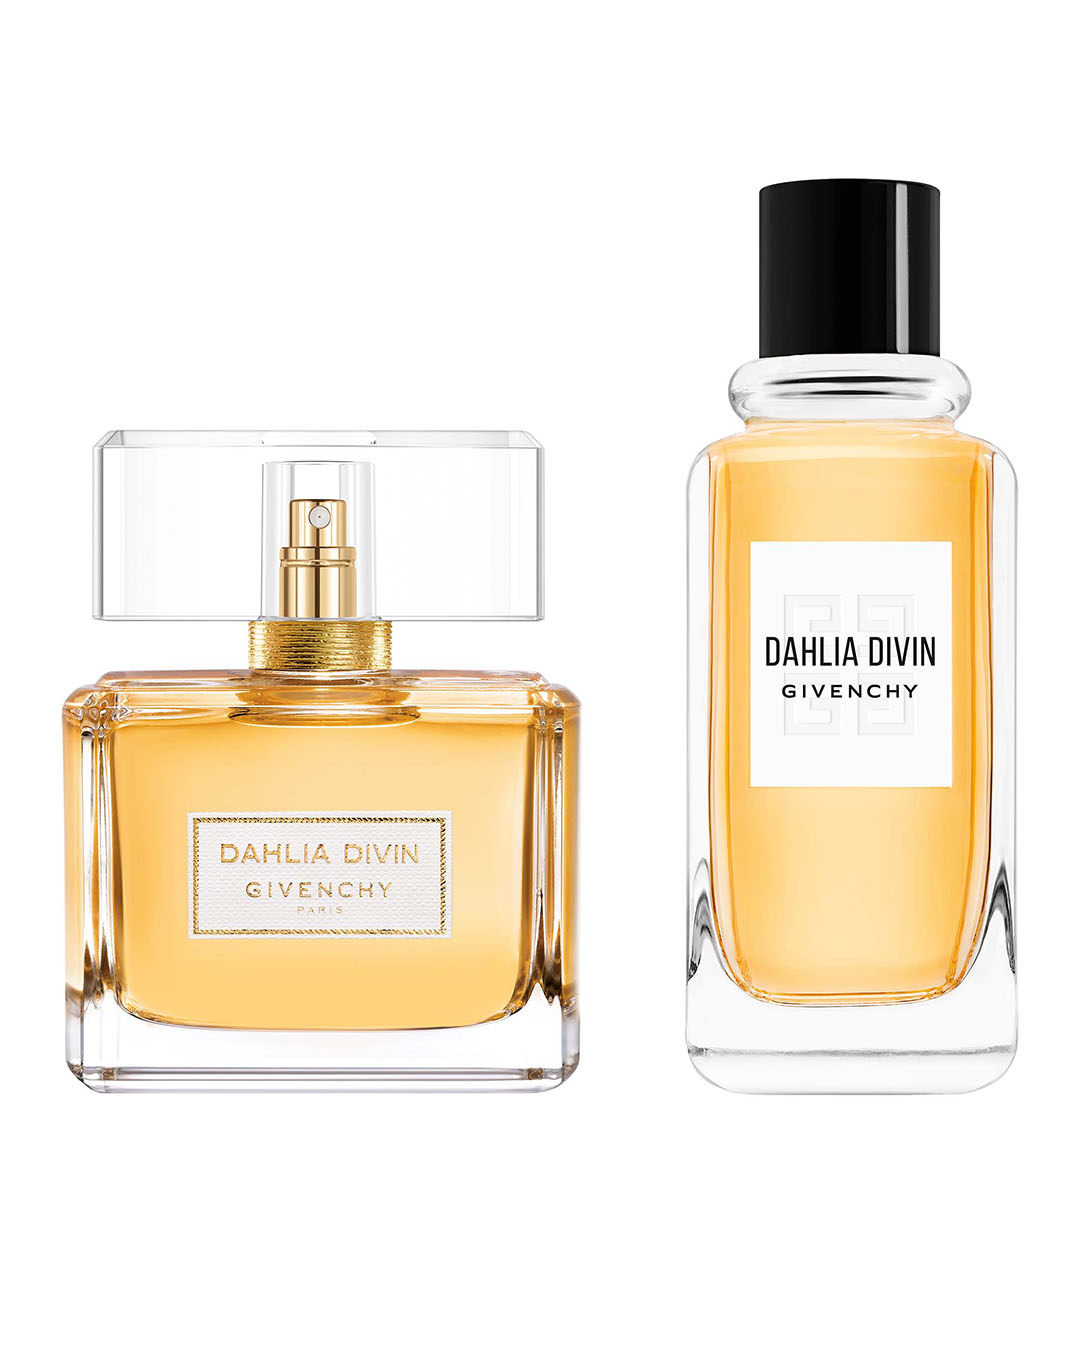 Dahlia Divin - Eau de parfum floral, woody, fruity | Givenchy Beauty